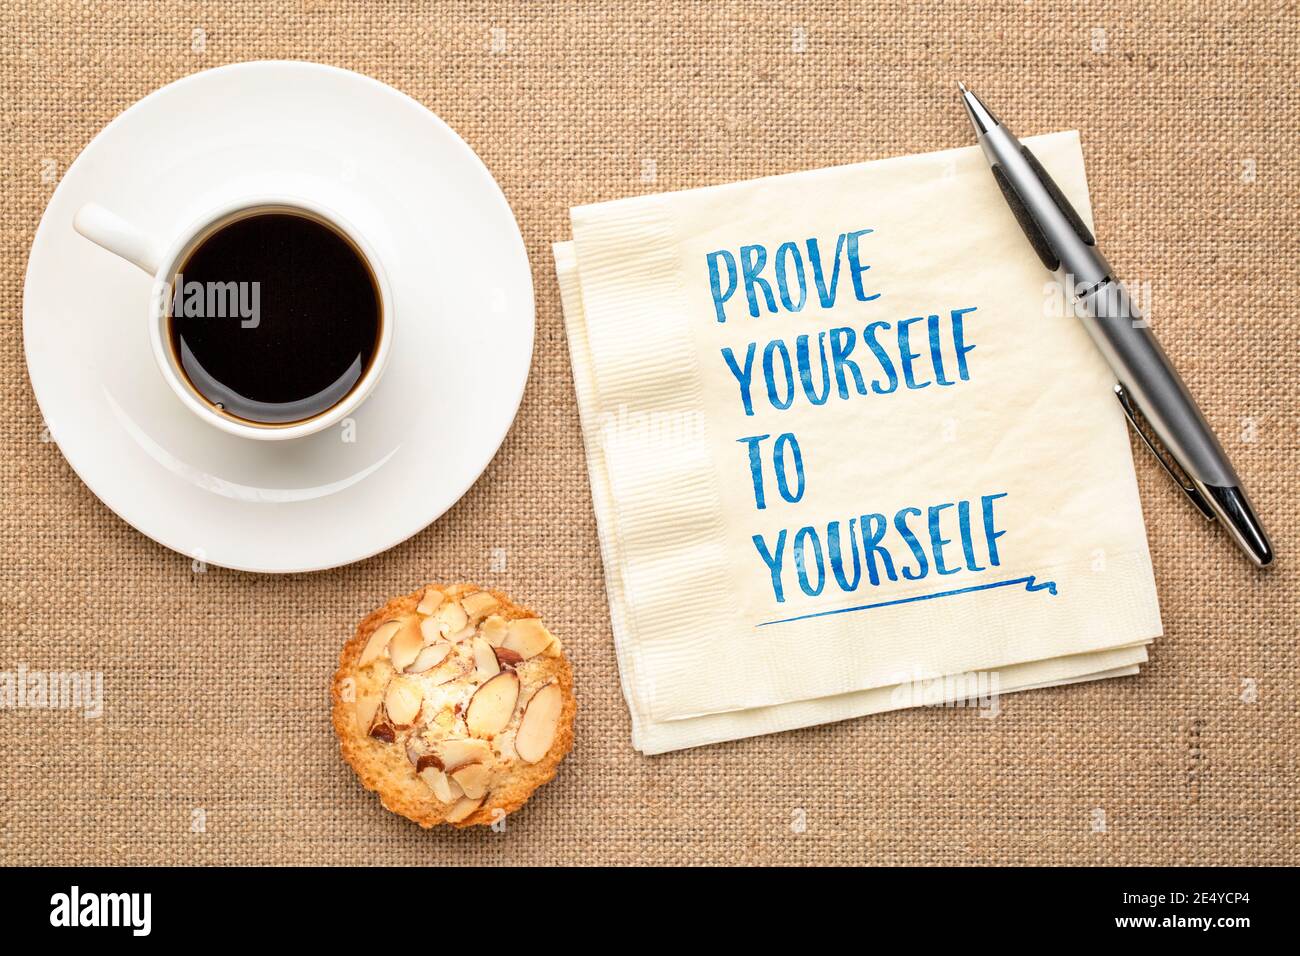 Beweisen Sie sich selbst - inspirierende Handschrift auf einer Serviette mit einer Tasse Kaffee, persönlicher Entwicklung und Selbstverbesserungskonzept Stockfoto